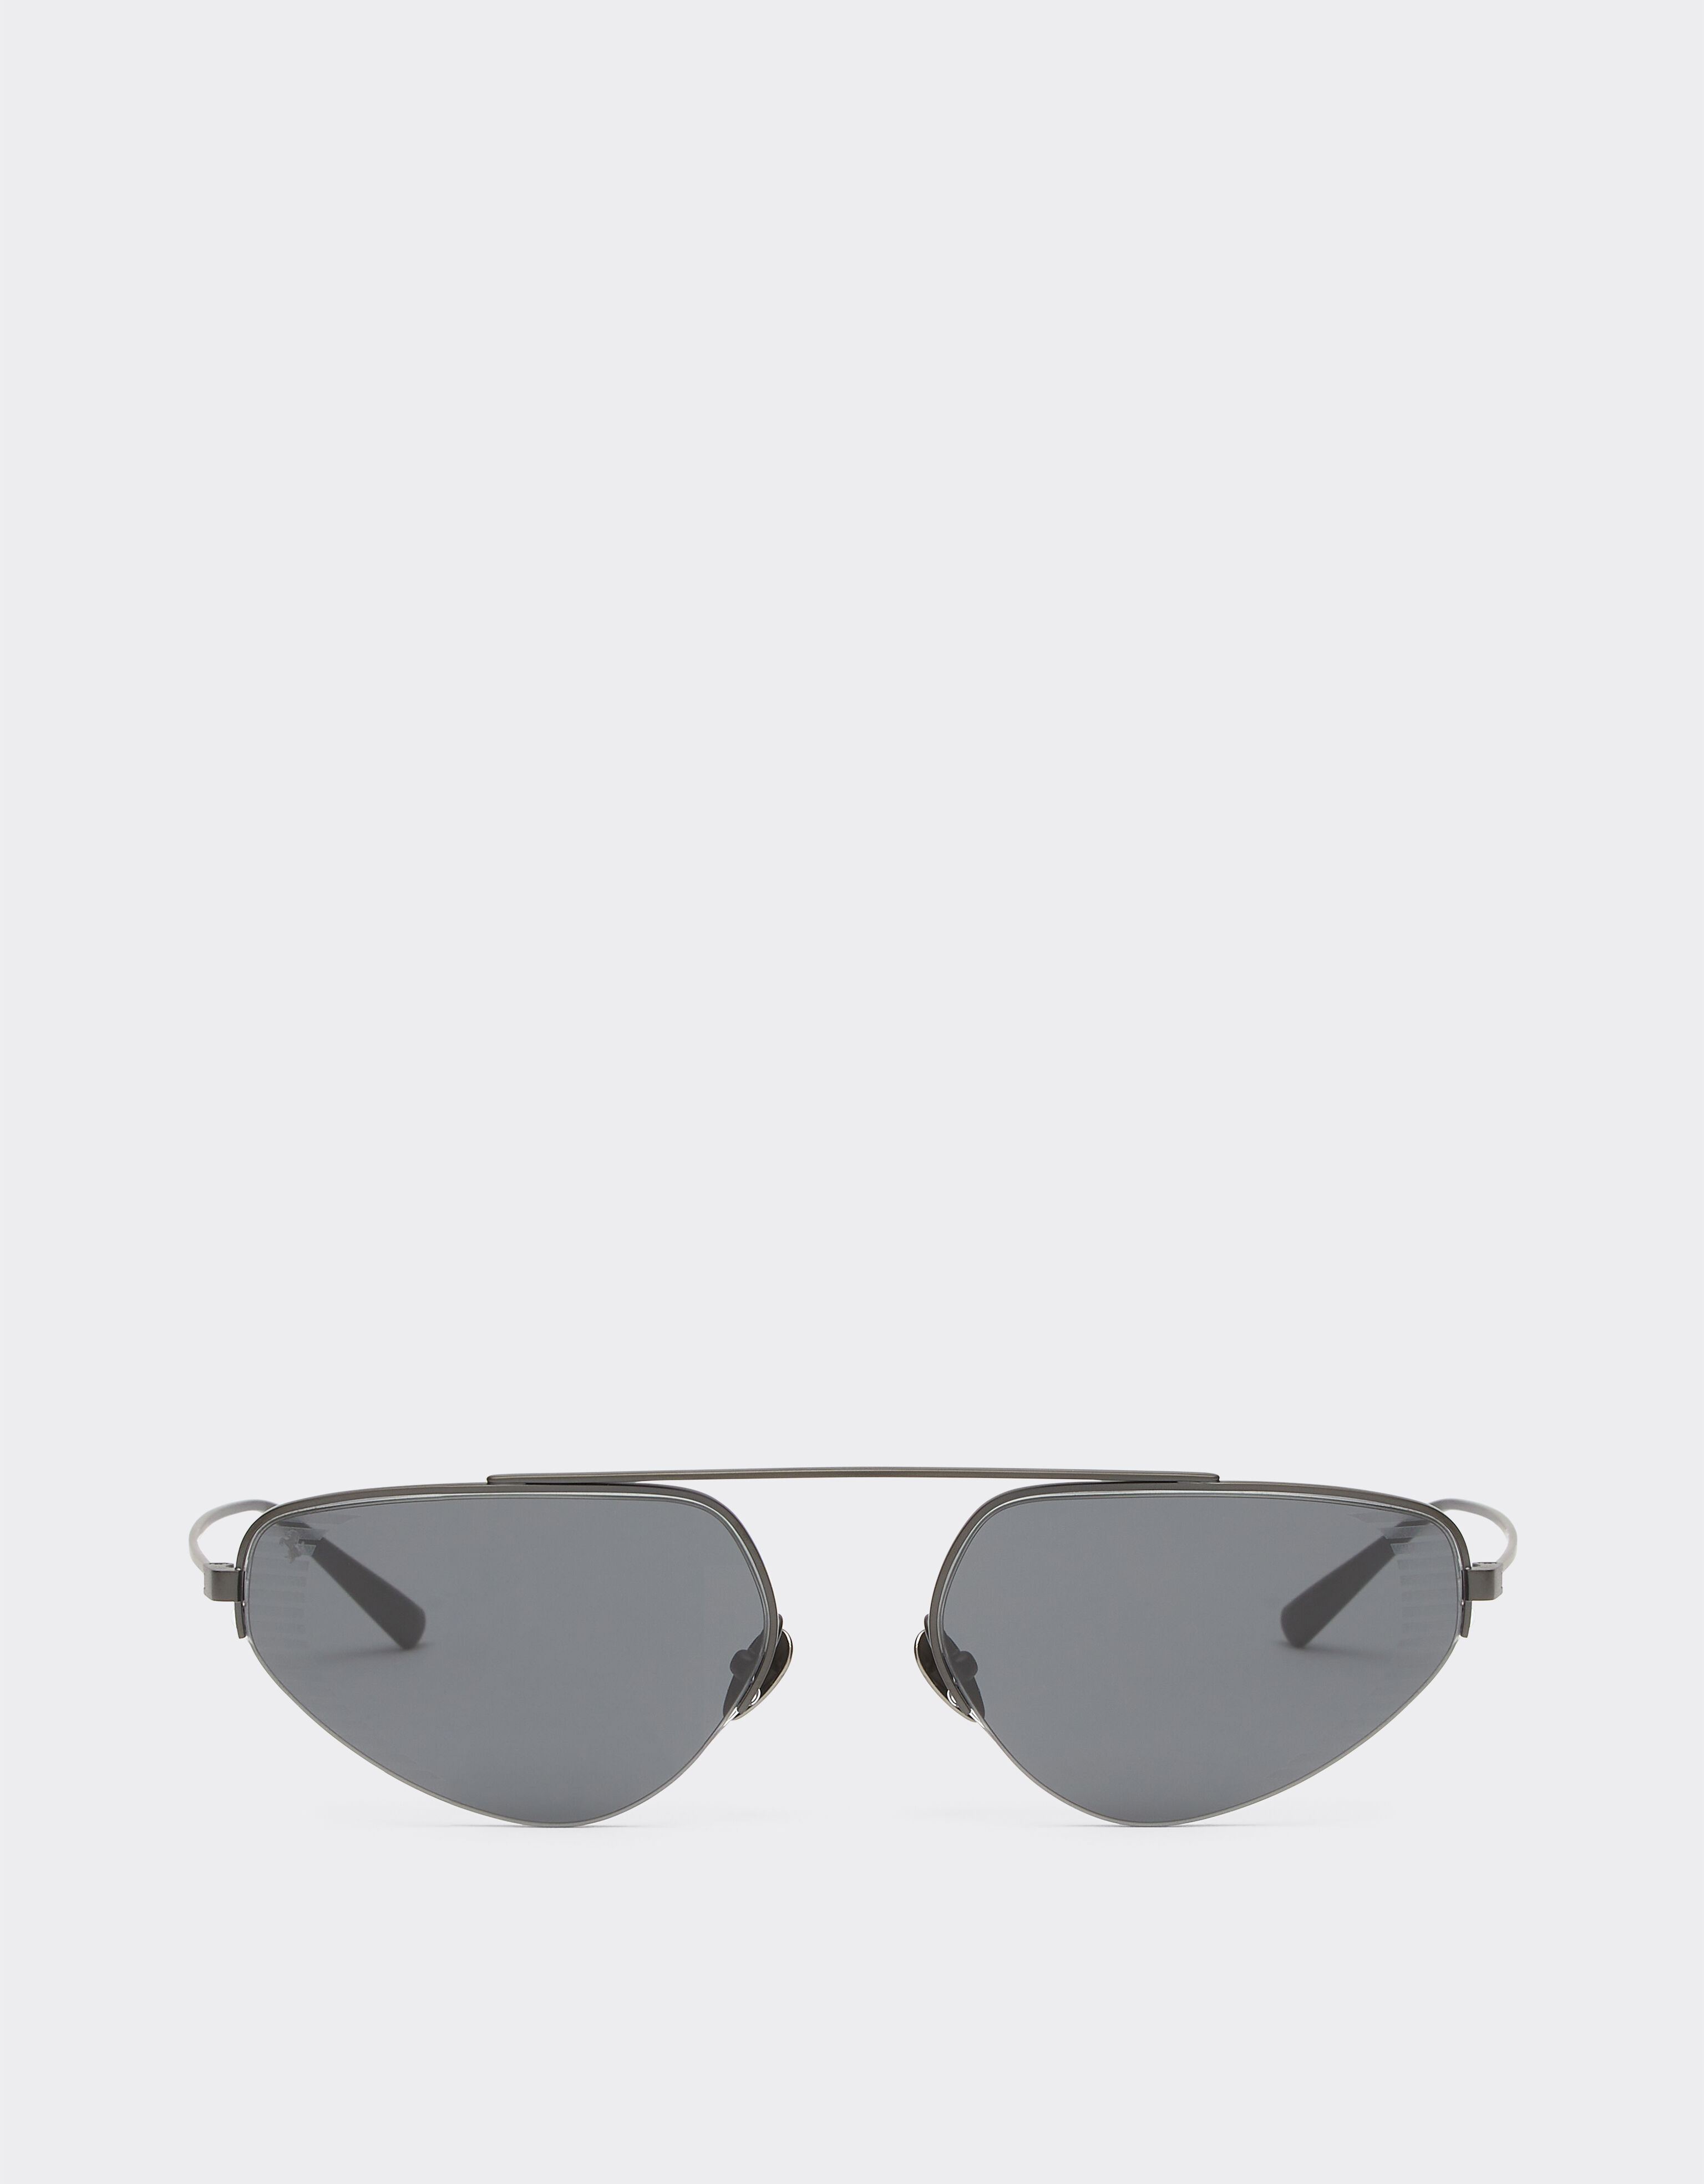 Ferrari Ferrari sunglasses in black titanium with pink lenses Black Matt F1275f